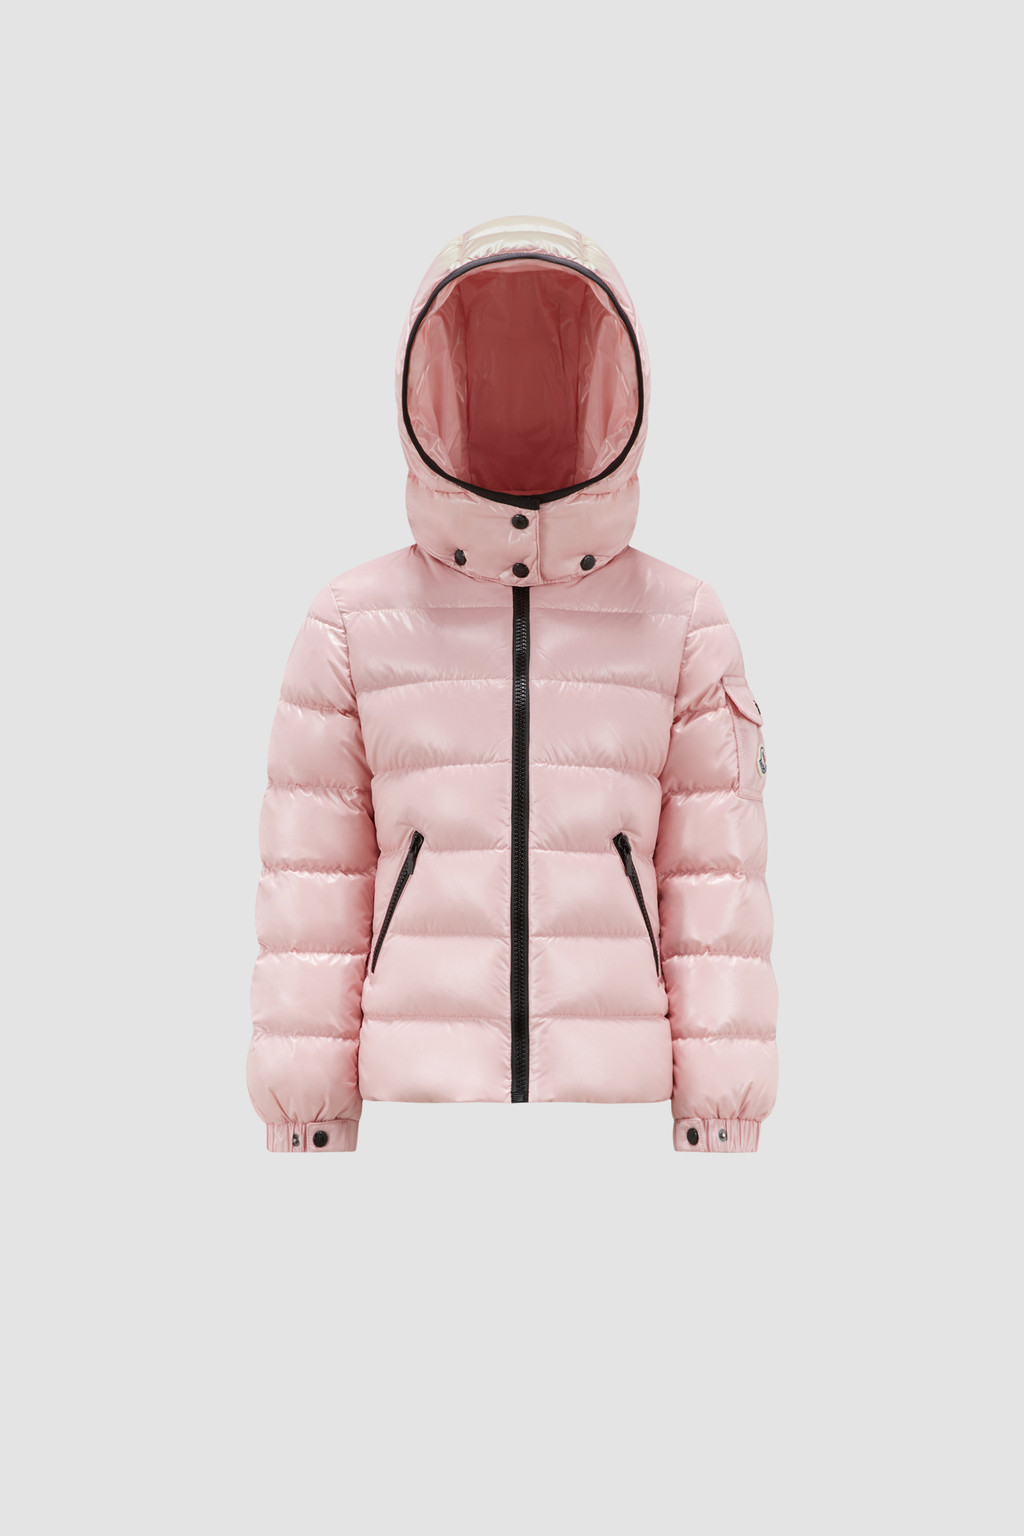 粉紅色Bady羽絨外套- 羽絨外套和背心for 兒童| Moncler SG